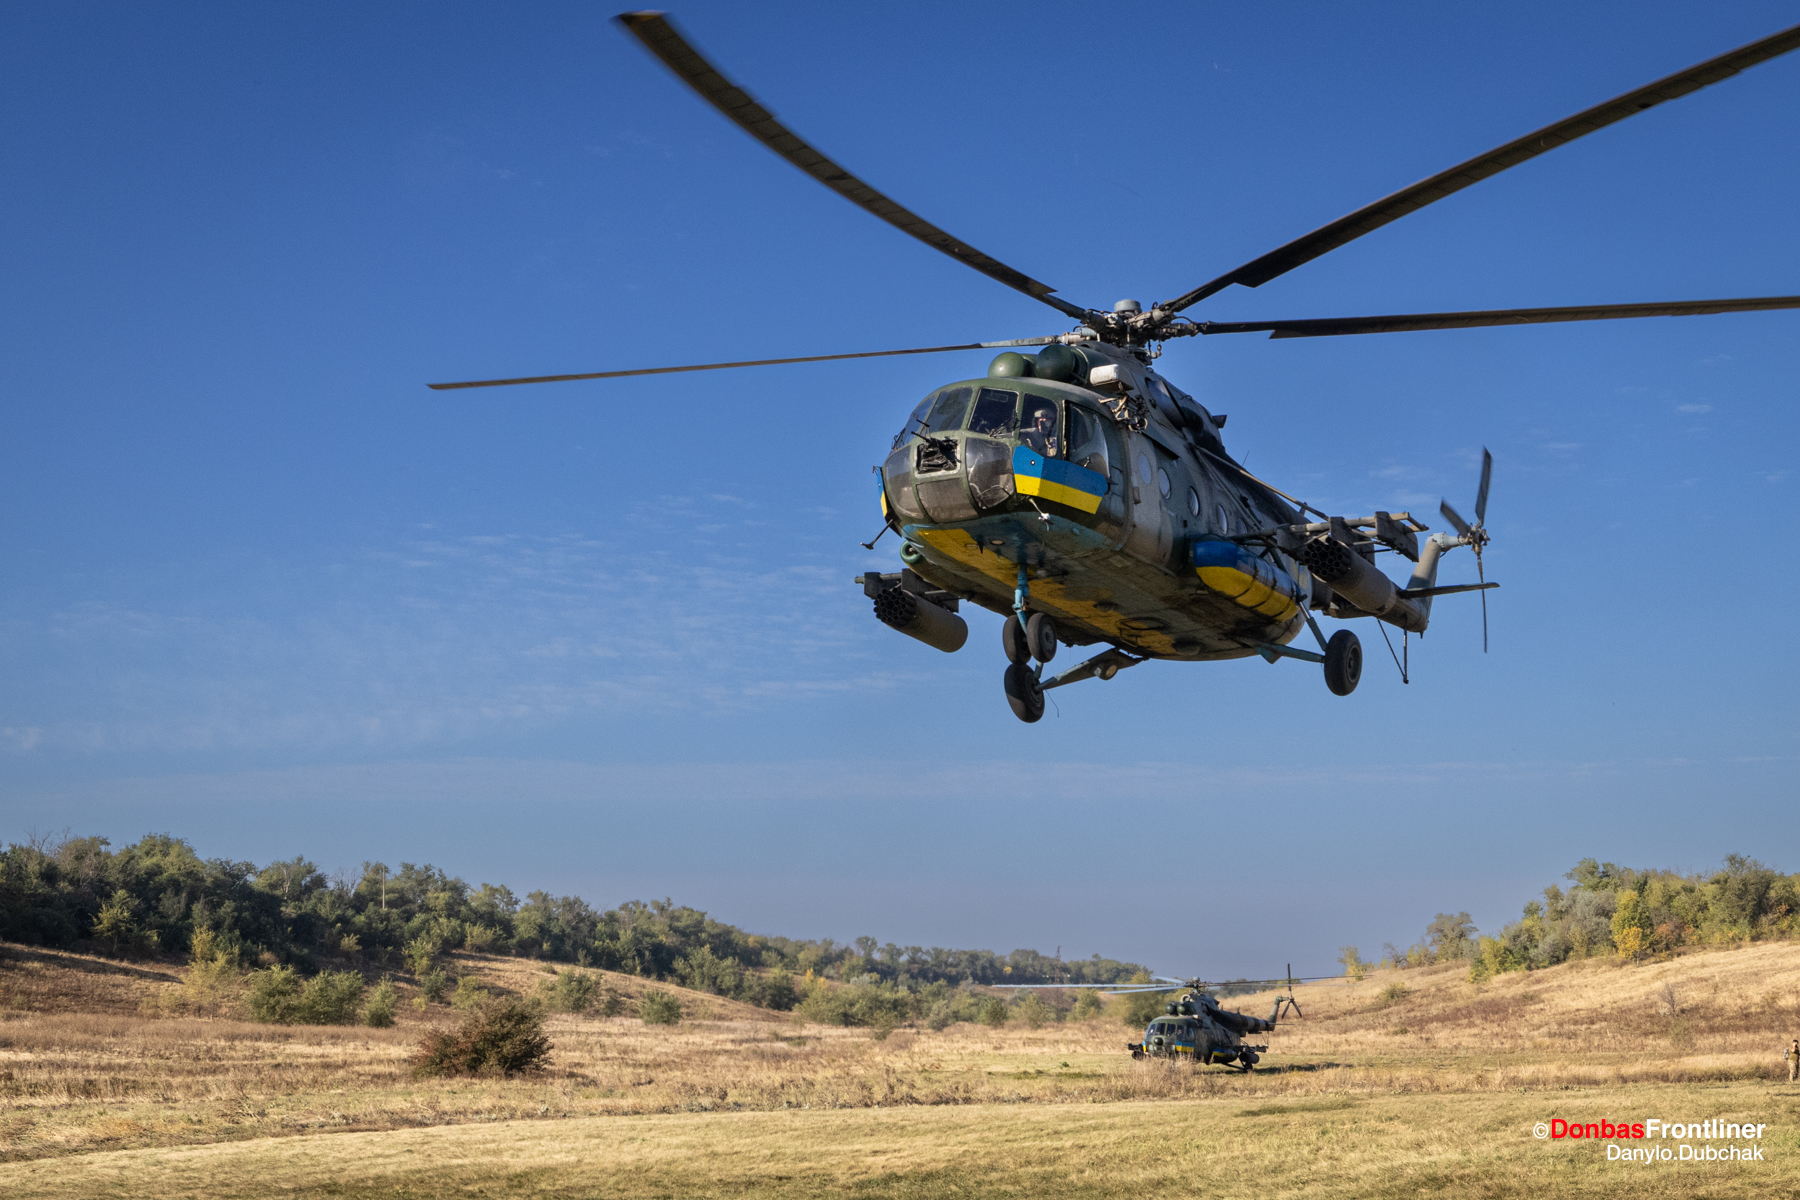 Donbas Frontliner / Гелікоптери майже завжди літають парами